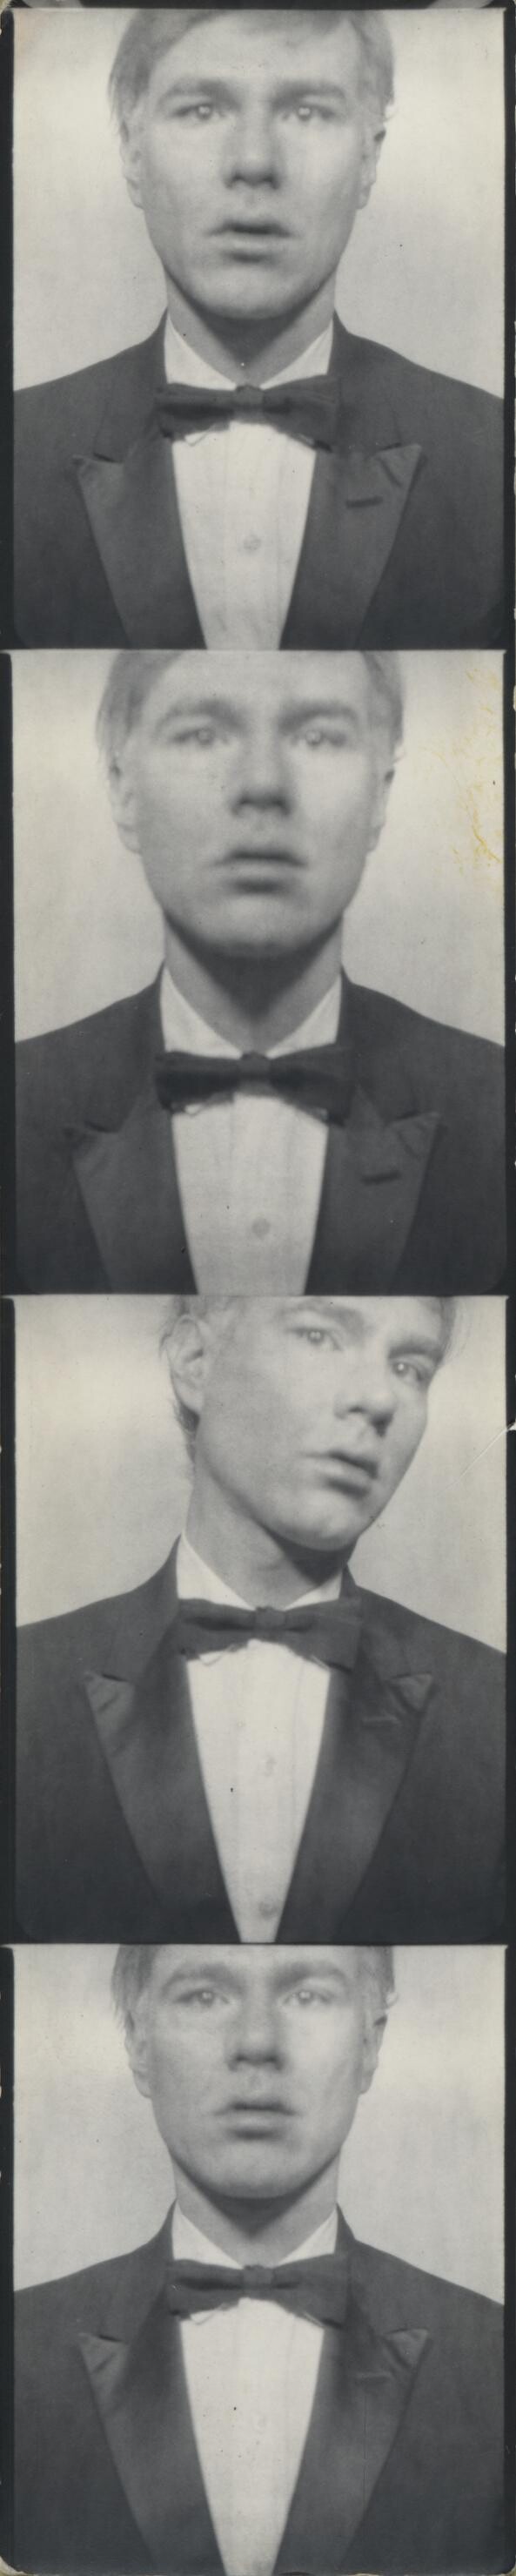 安迪沃荷(Andy Warhol)照片